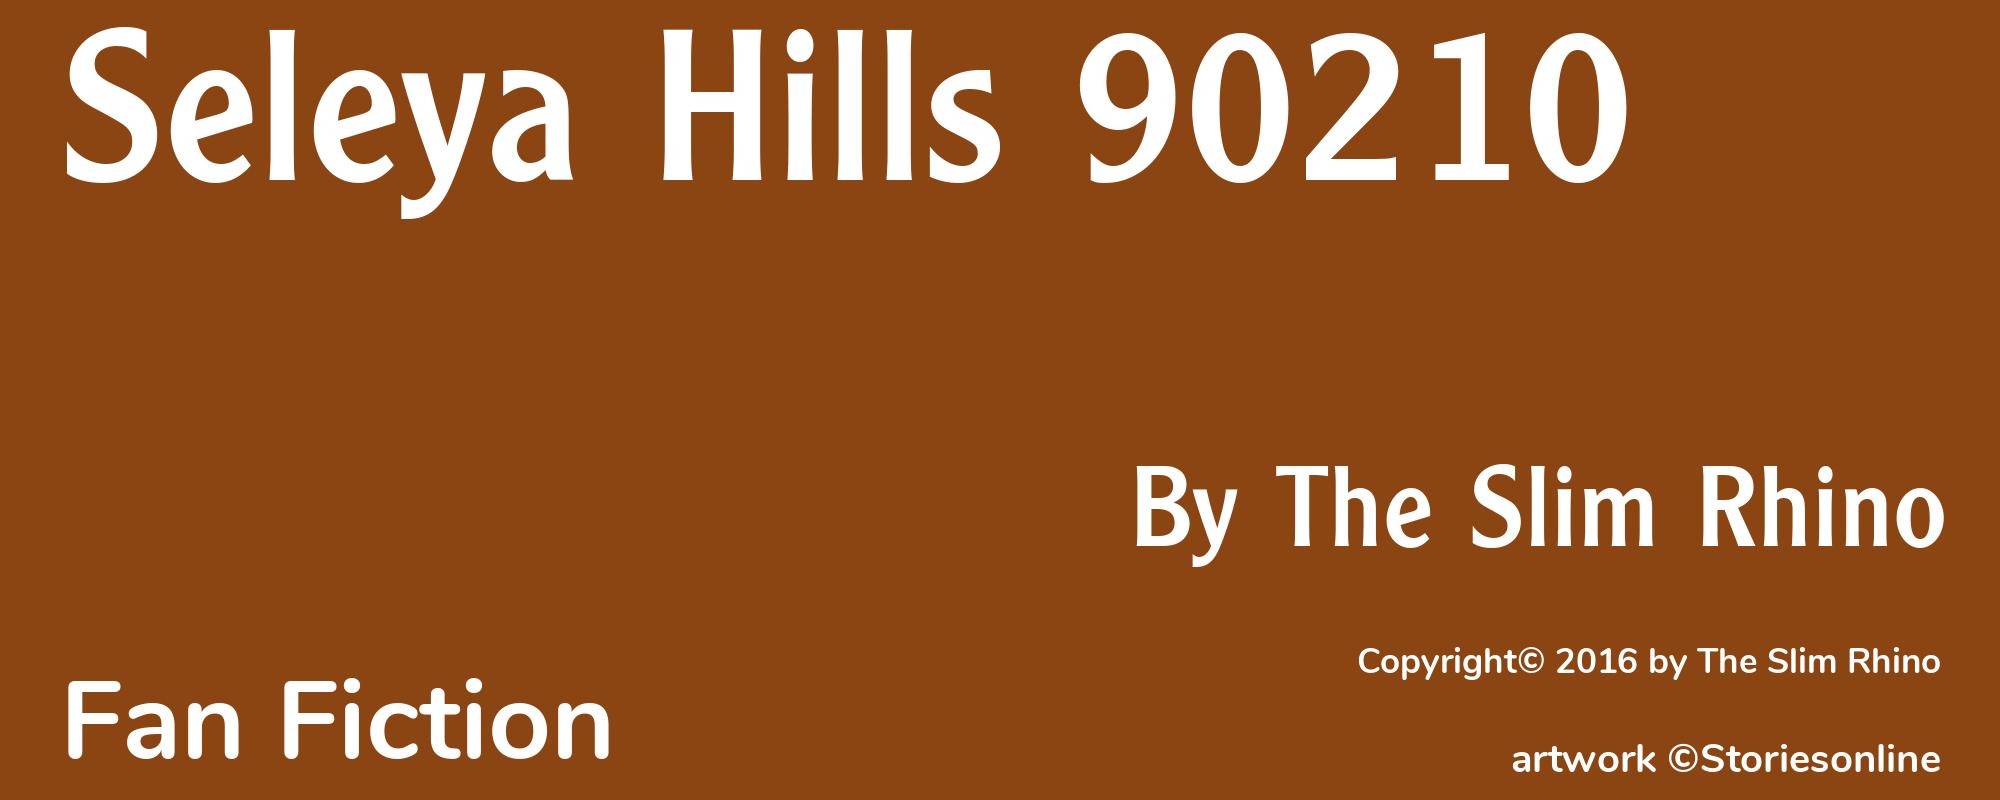 Seleya Hills 90210 - Cover